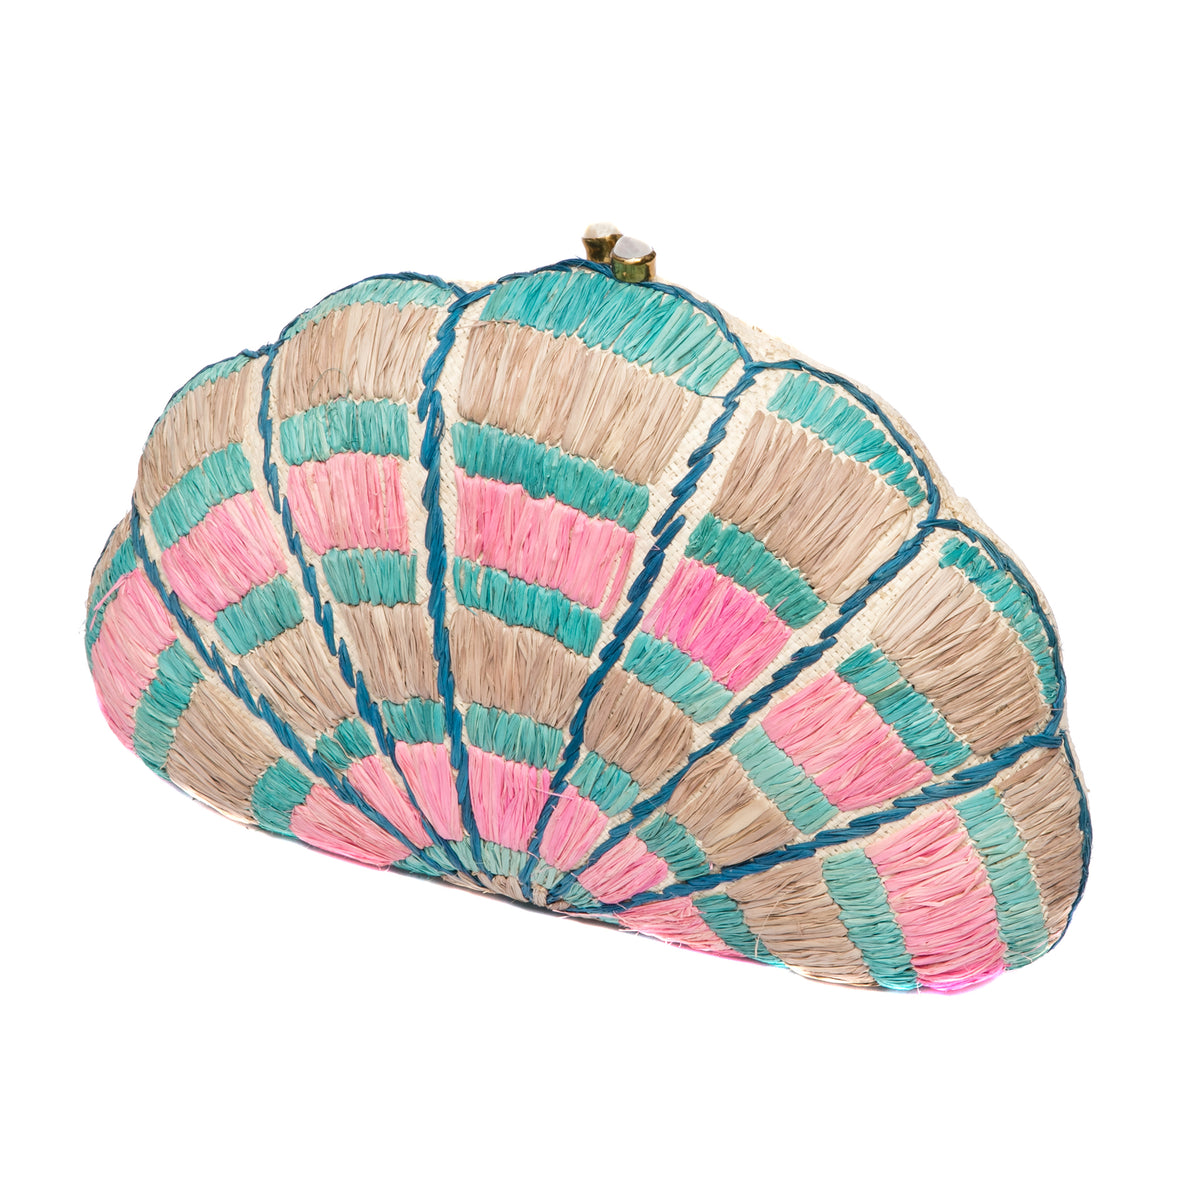 Raffia Seashell Clutch Bag